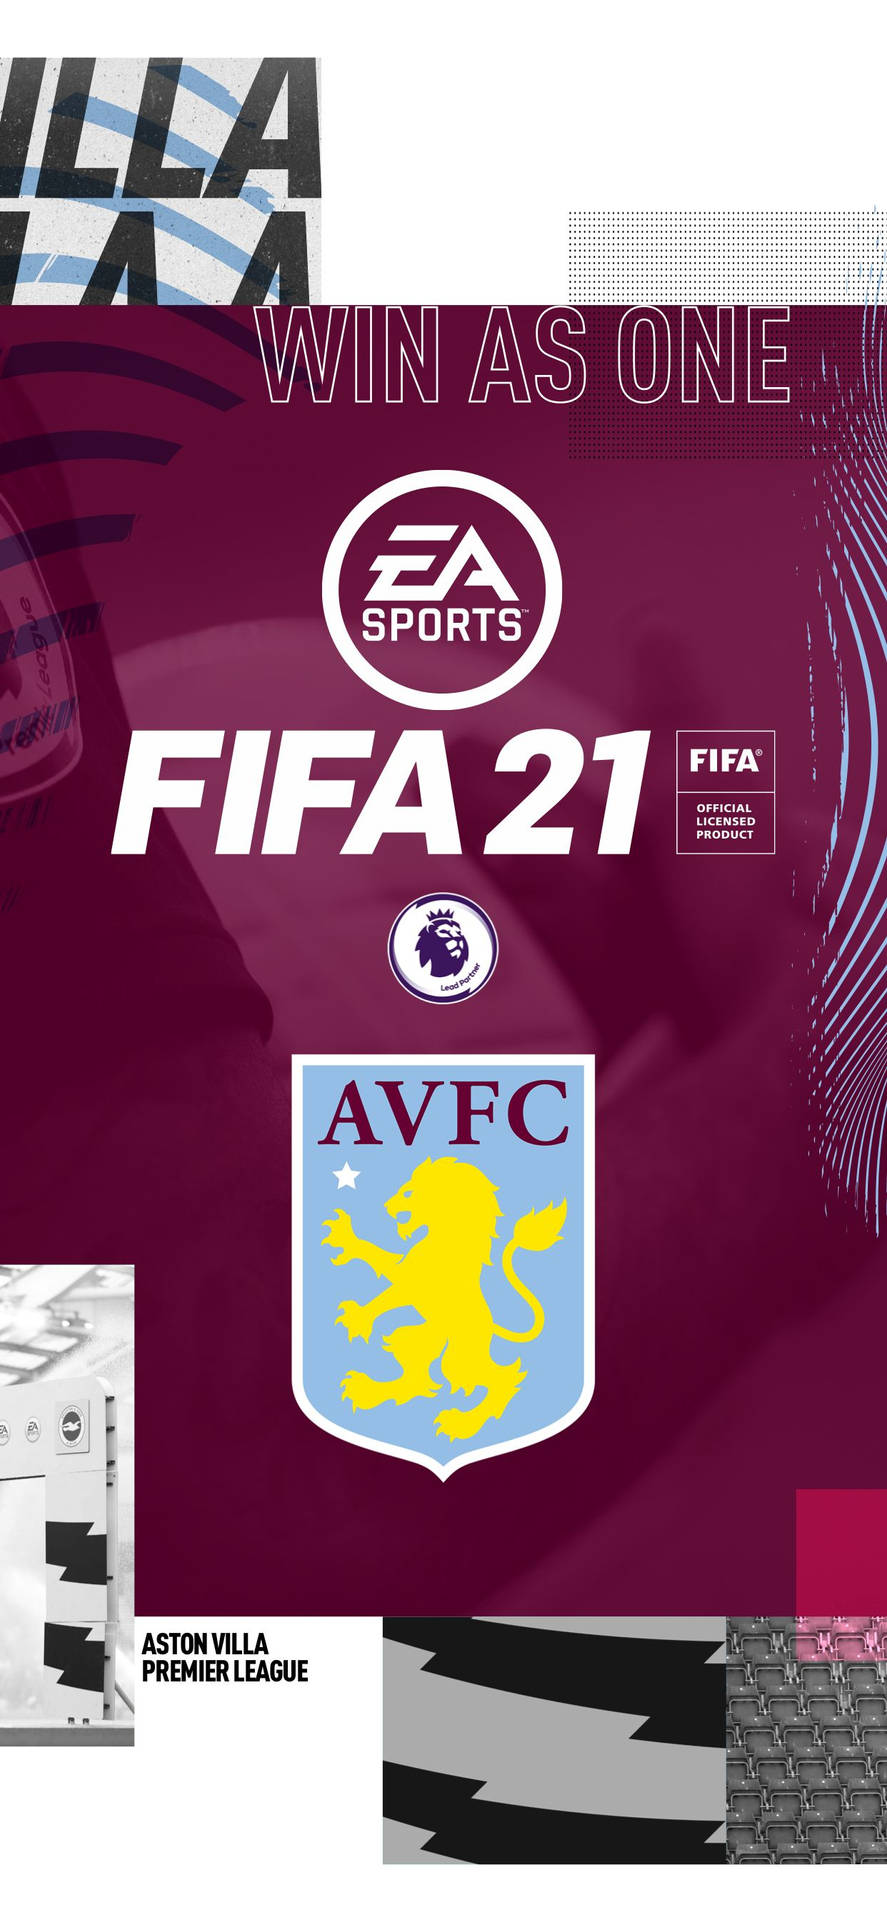 Aston Villa's Poster On Fifa 21